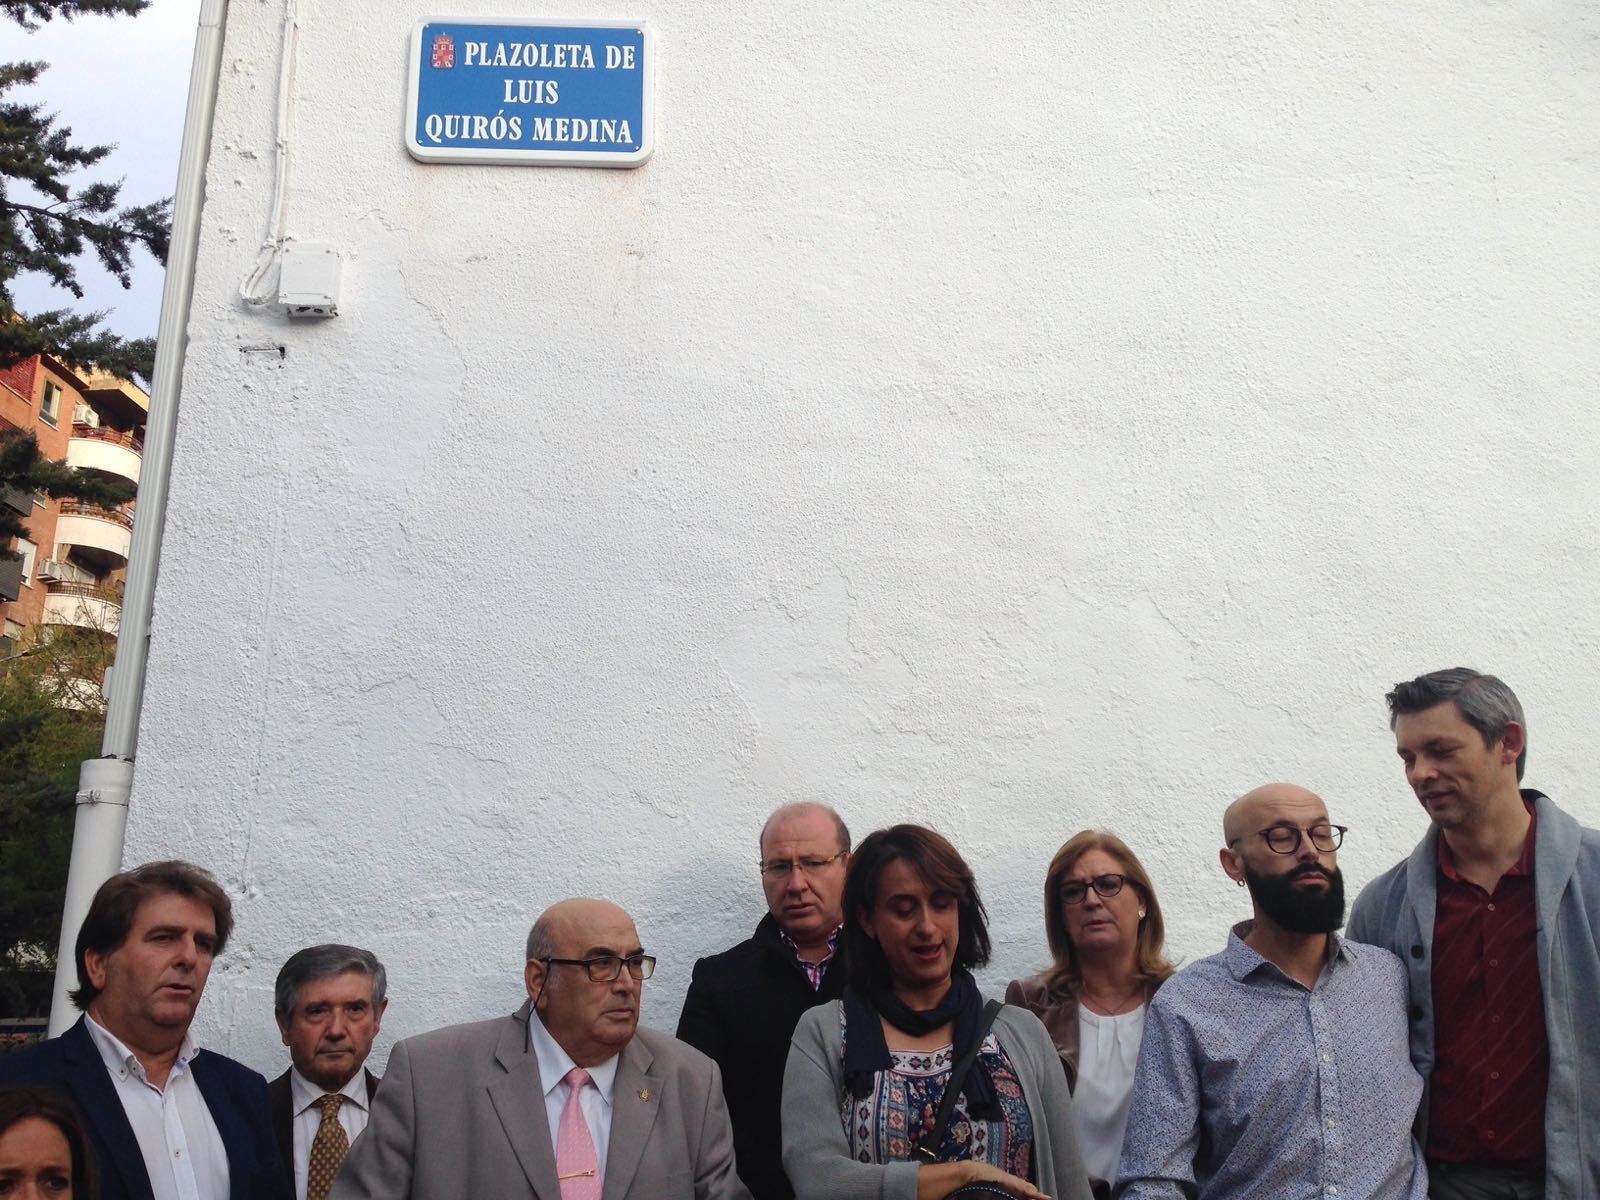 Plazoleta de Luis Quirós. El alcalde descubrió una placa en el barrio de Santa Isabel en la que desde ahora llevará el nombre de Plazoleta de Luis Quirós Medina, en reconocimiento a quien tanto ha hecho por el barrio y el vecindario. Enhorabuena.